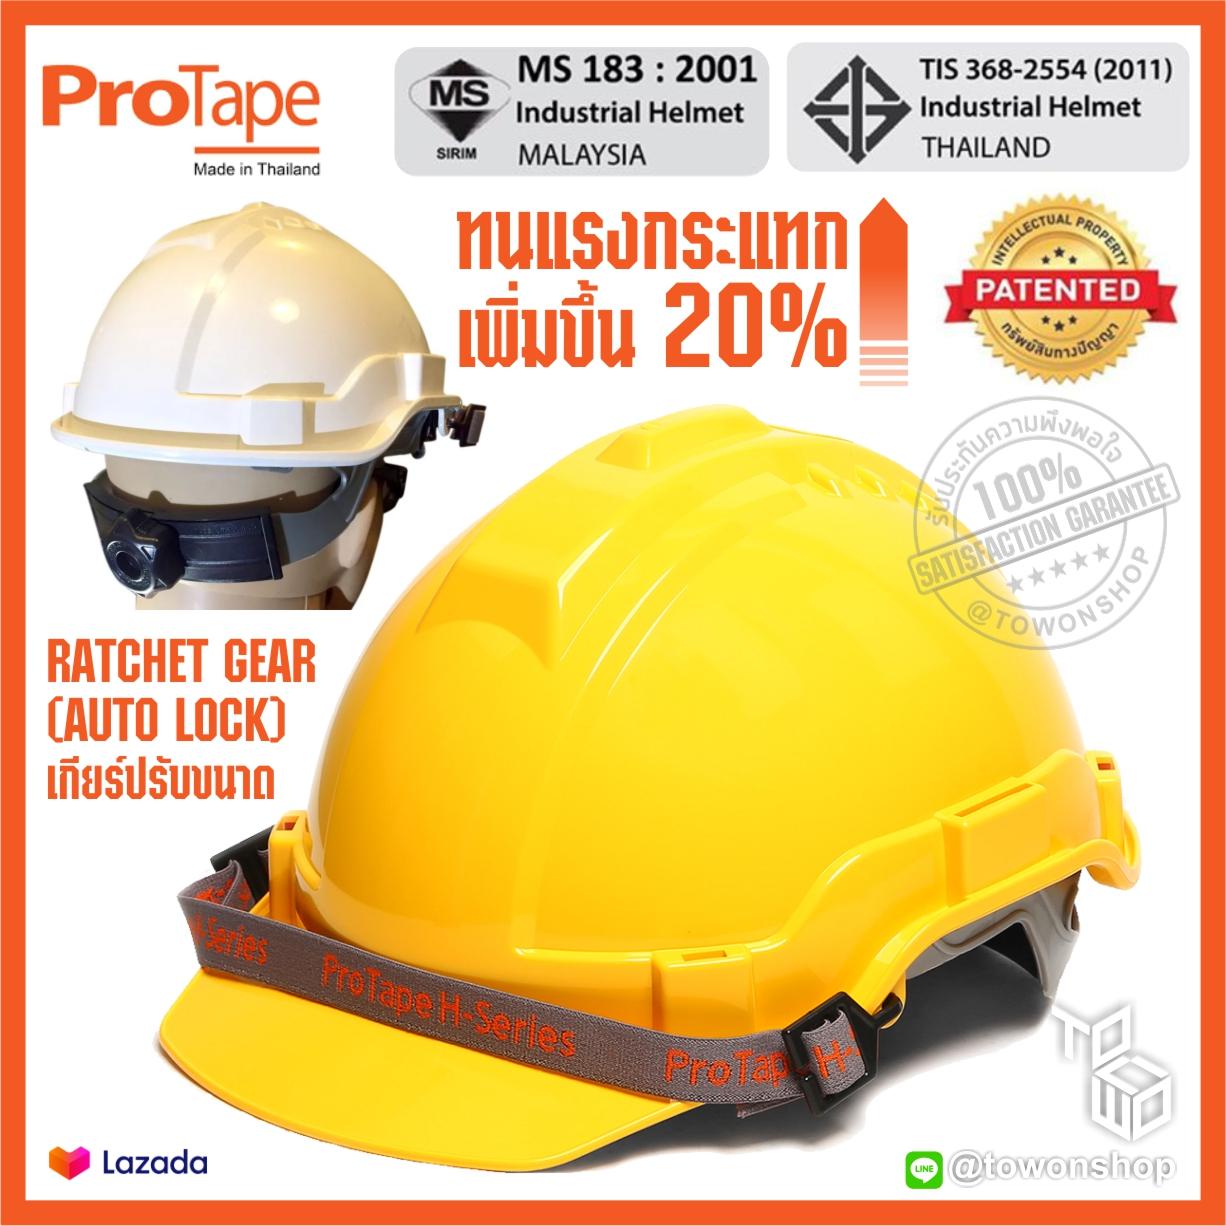 PROTAPE หมวกนิรภัย หมวกเซฟตี้ หมวกวิศวะ แบบปรับหมุน สายรัดคางยางยืด SAFETY HELMET (High Impact ABS) น้ำหนักเบา แข็งแรง ป้องกันแรงกระแทกสูง ผ่านการรับรองมาตรฐานความปลอยภัย มอก.368-2554 ผลิตในประเทศไทย